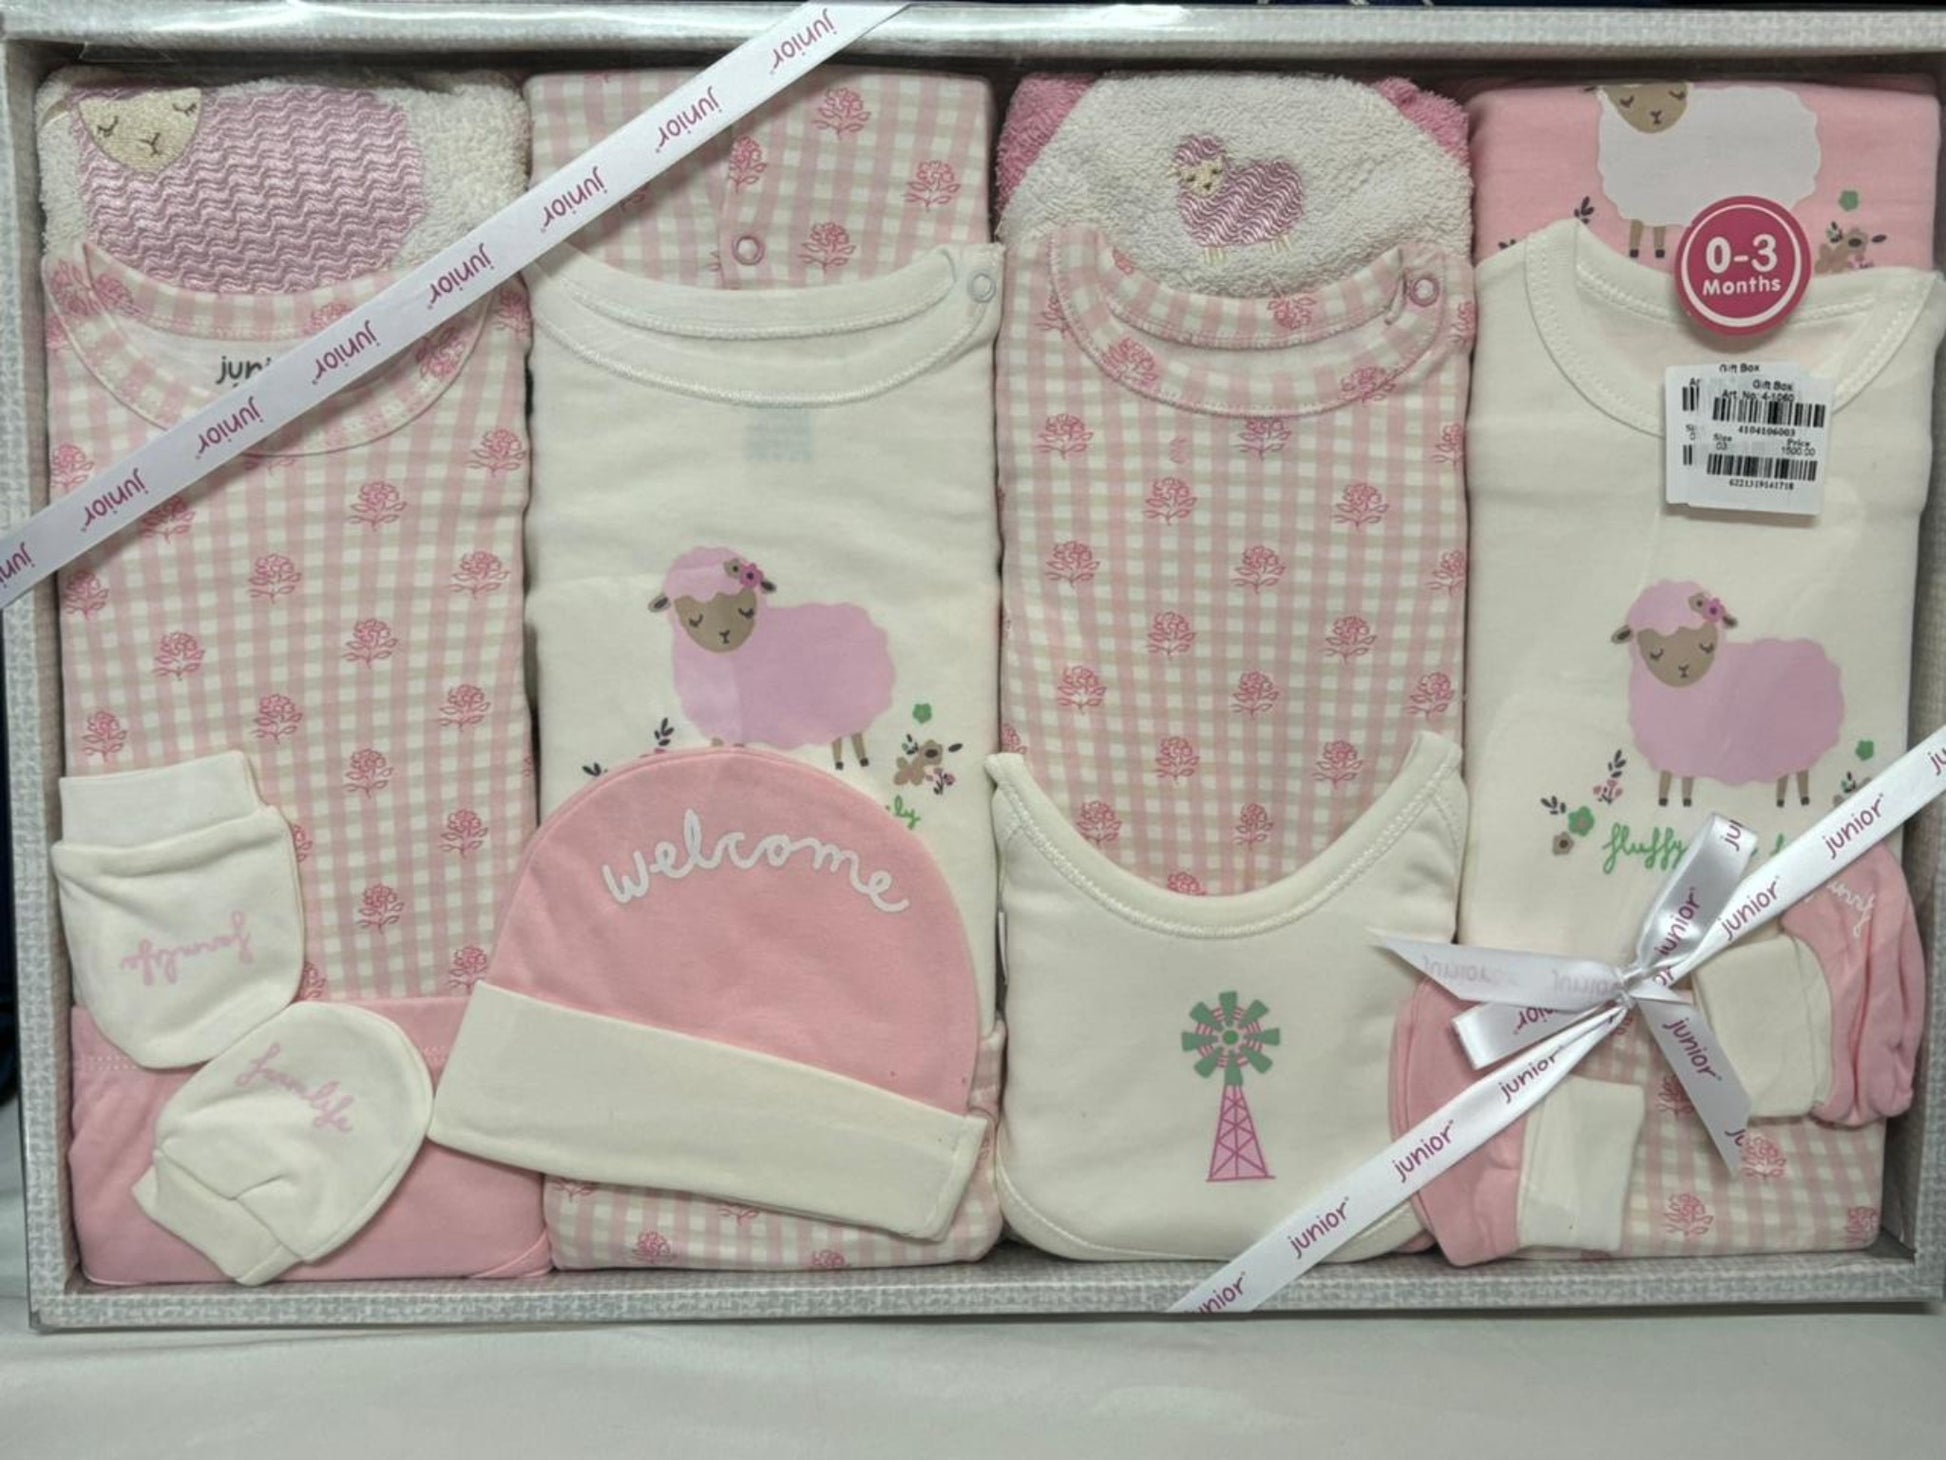 Junior Baby Fashion Gift set for newborn to 3 months 20 pieces اطقم الولادة من جونيور من سن يوم ل 3 شهور 20 قطعه